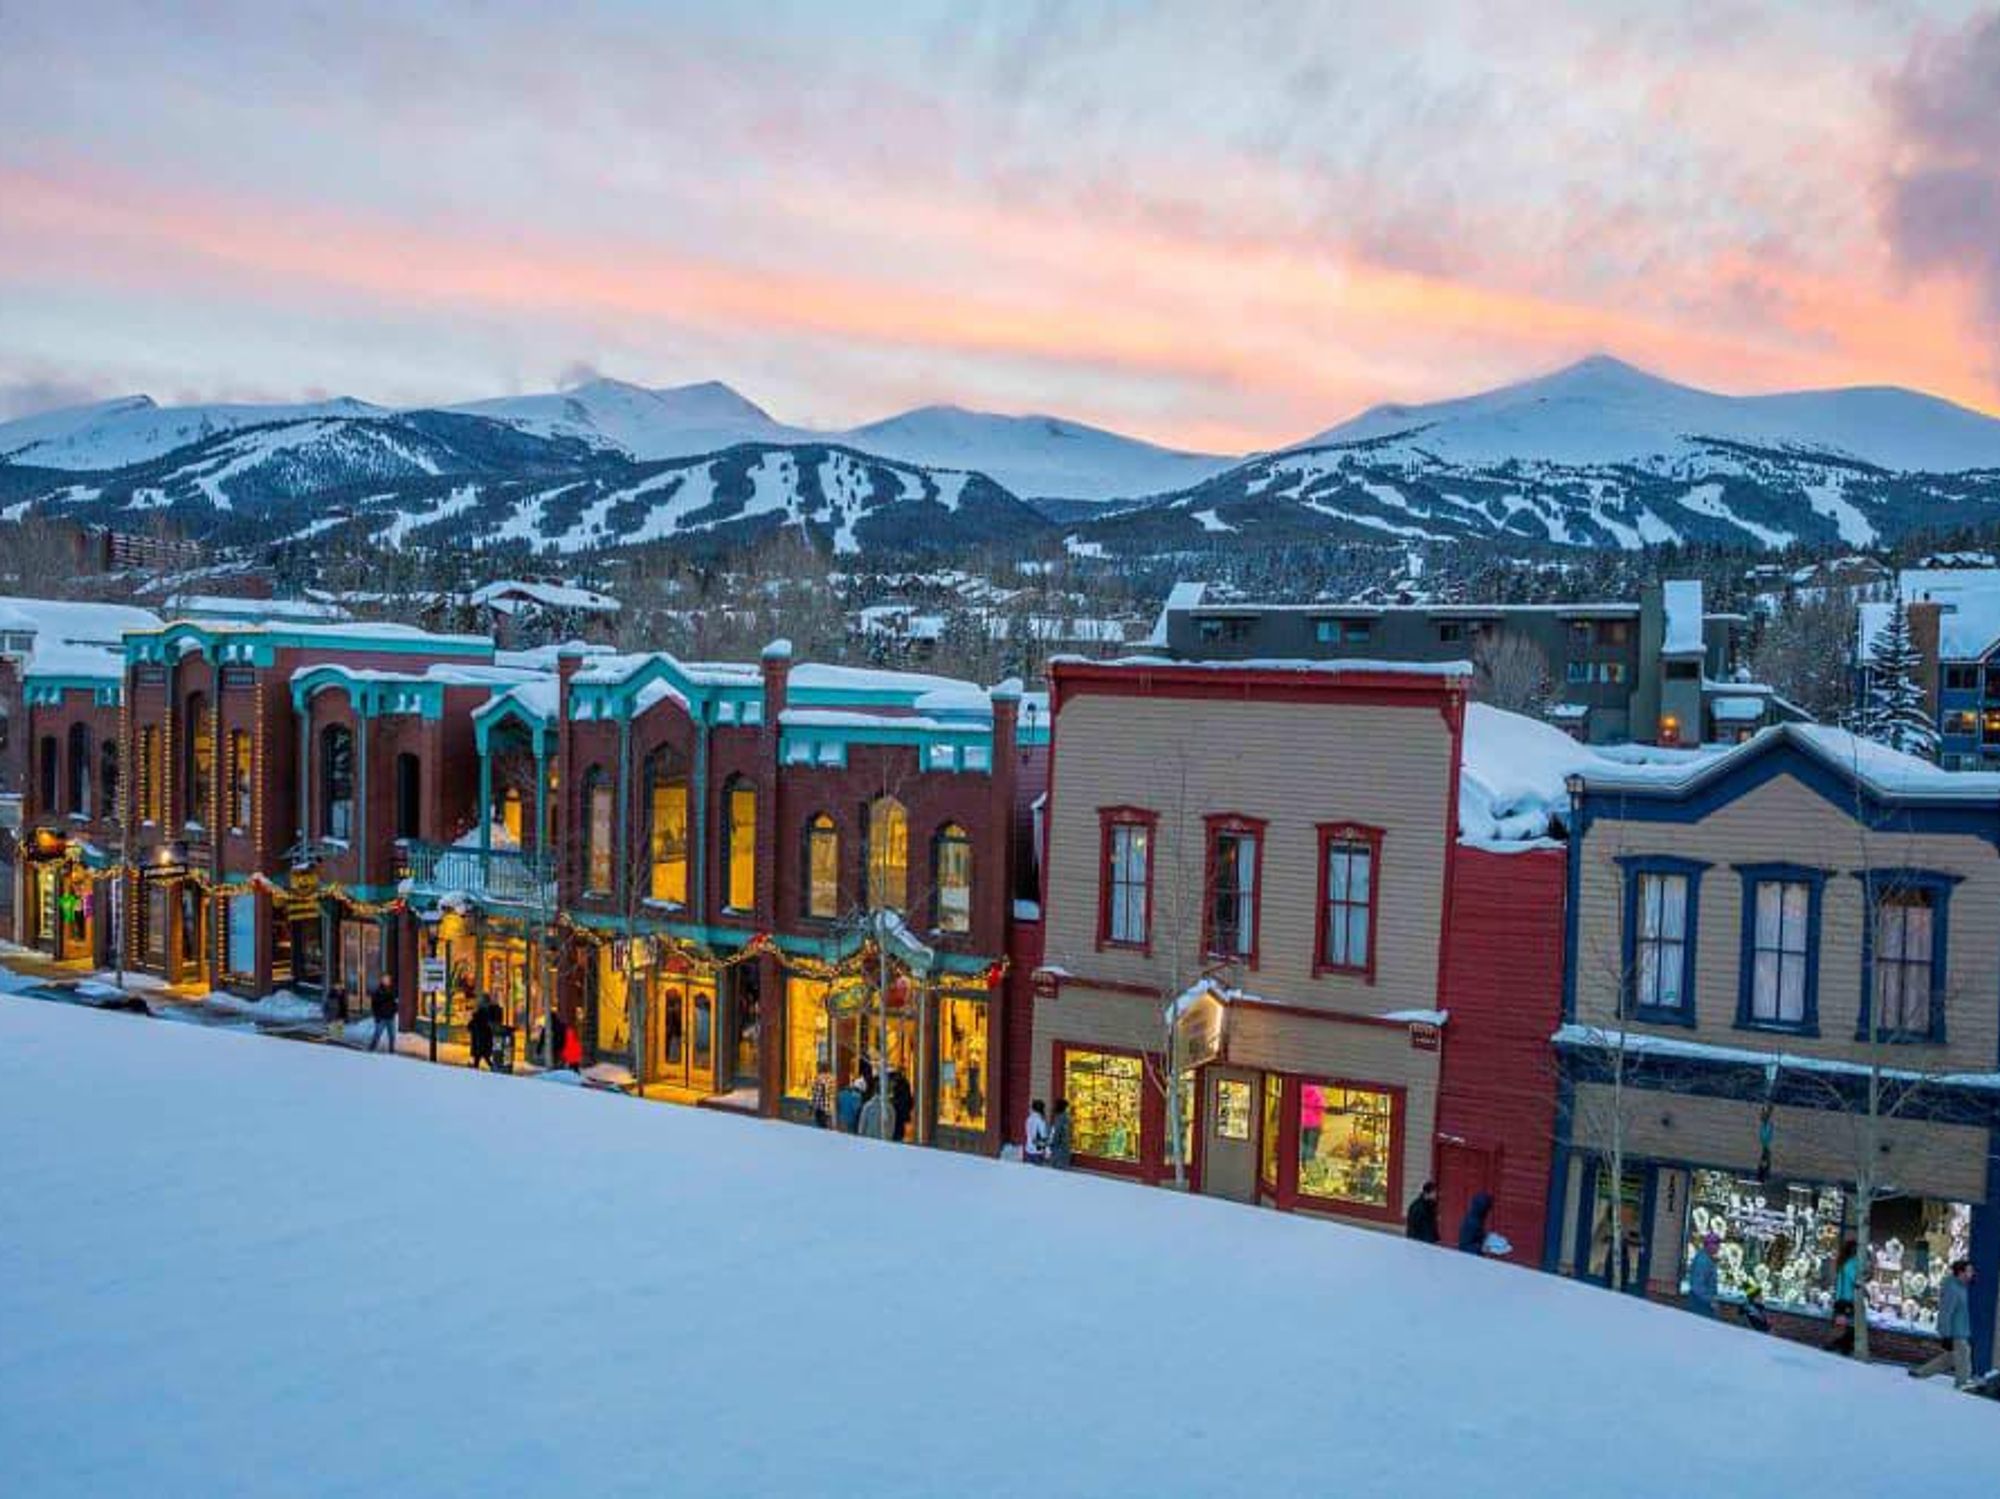 Breckenridge Colorado snow town